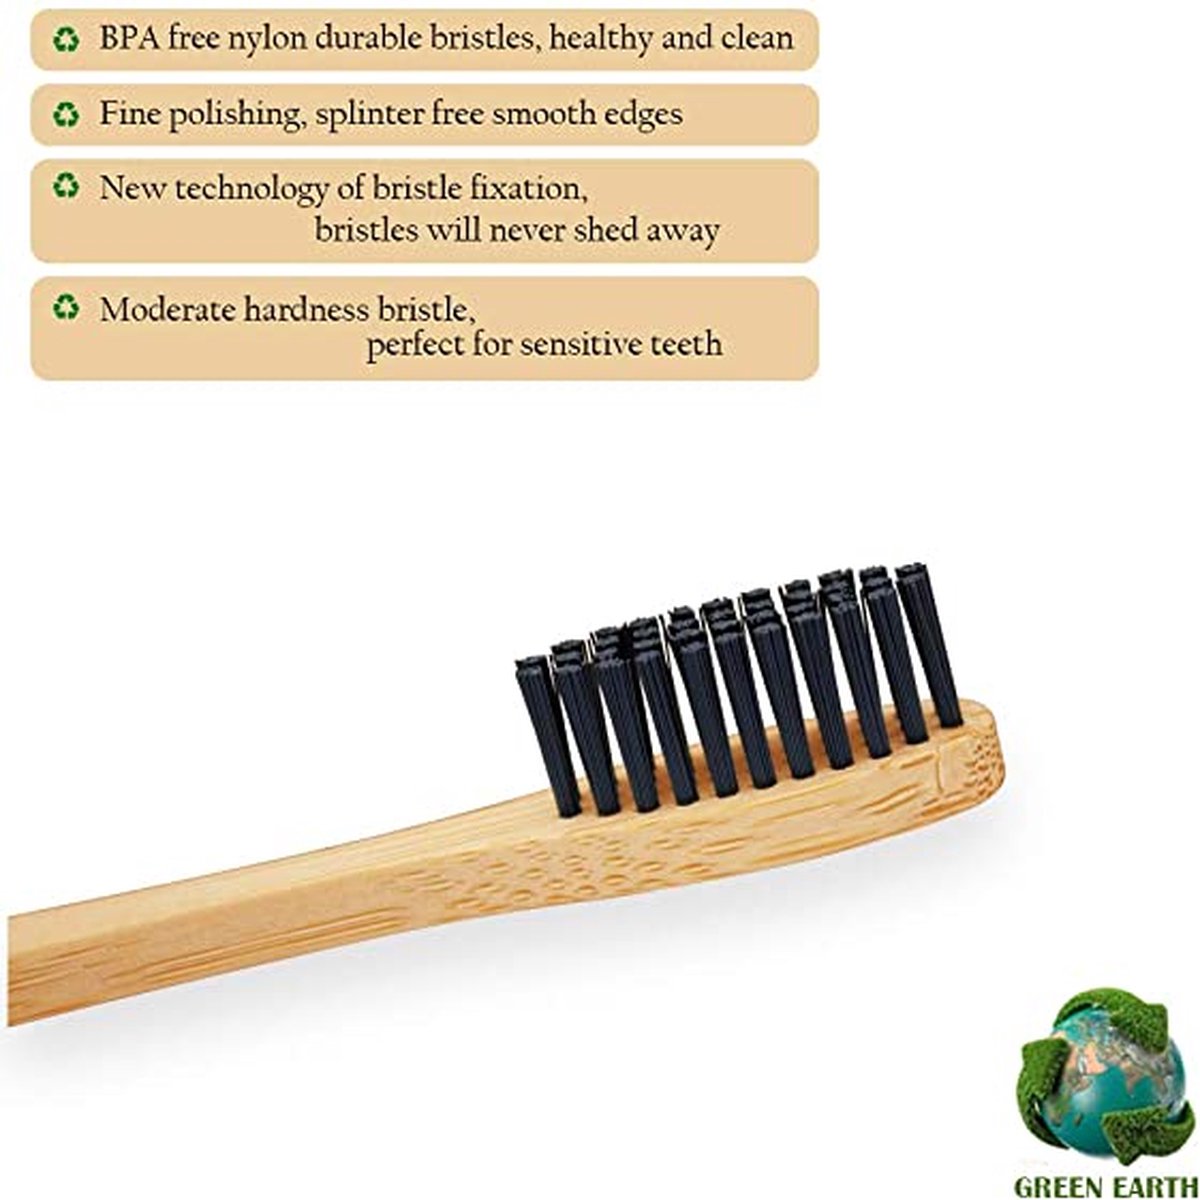 Ecorganic.nl - Persoonlijke Verzorging - Tanden - Bamboe tandenborstel, biologisch afbreekbare houten tandenborstels in 8 kleuren, BPA-vrij, plastic vrij milieuvriendelijke tandenborstel